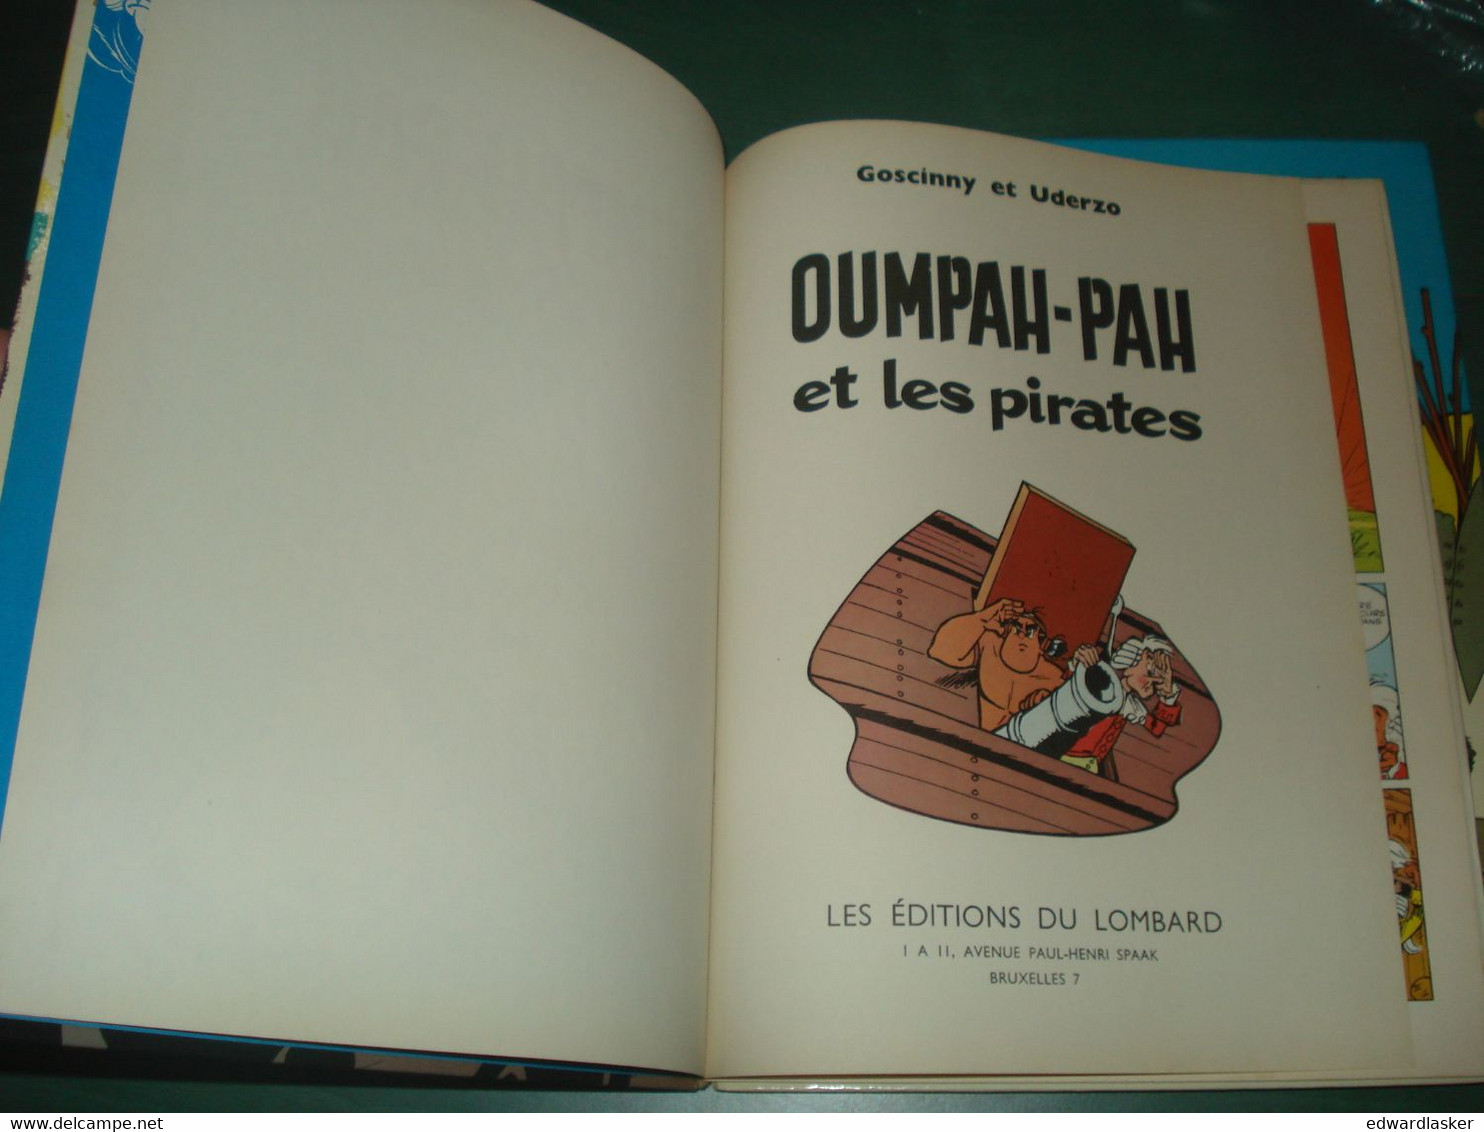 OUMPAH-PAH le peau rouge + et les pirates /Goscinny Uderzo - réédition (1966) Dargaud ( Lombard )